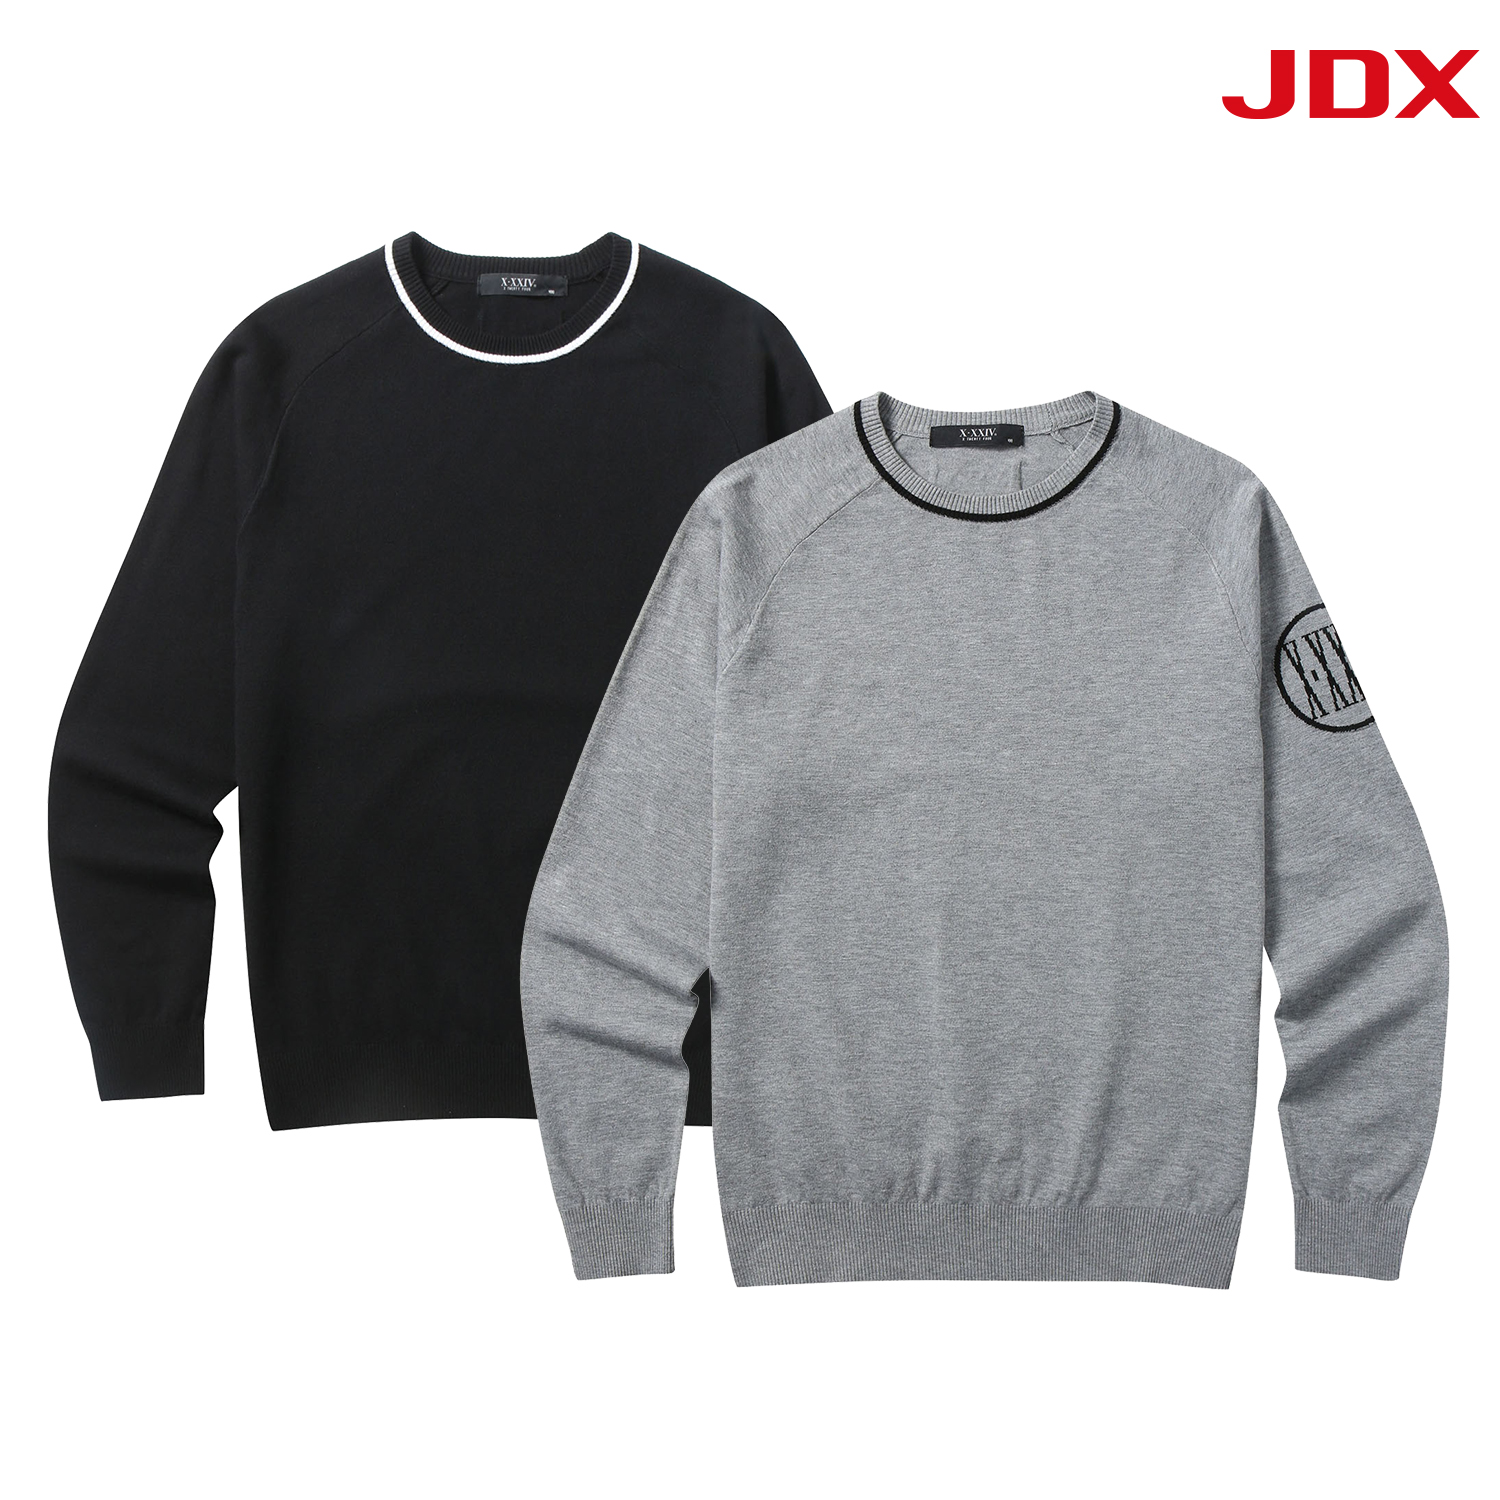 [핫딜] JDX 남성 소매 로고 포인트 라운드 스웨터 2종 택 1(X4SPT1351)